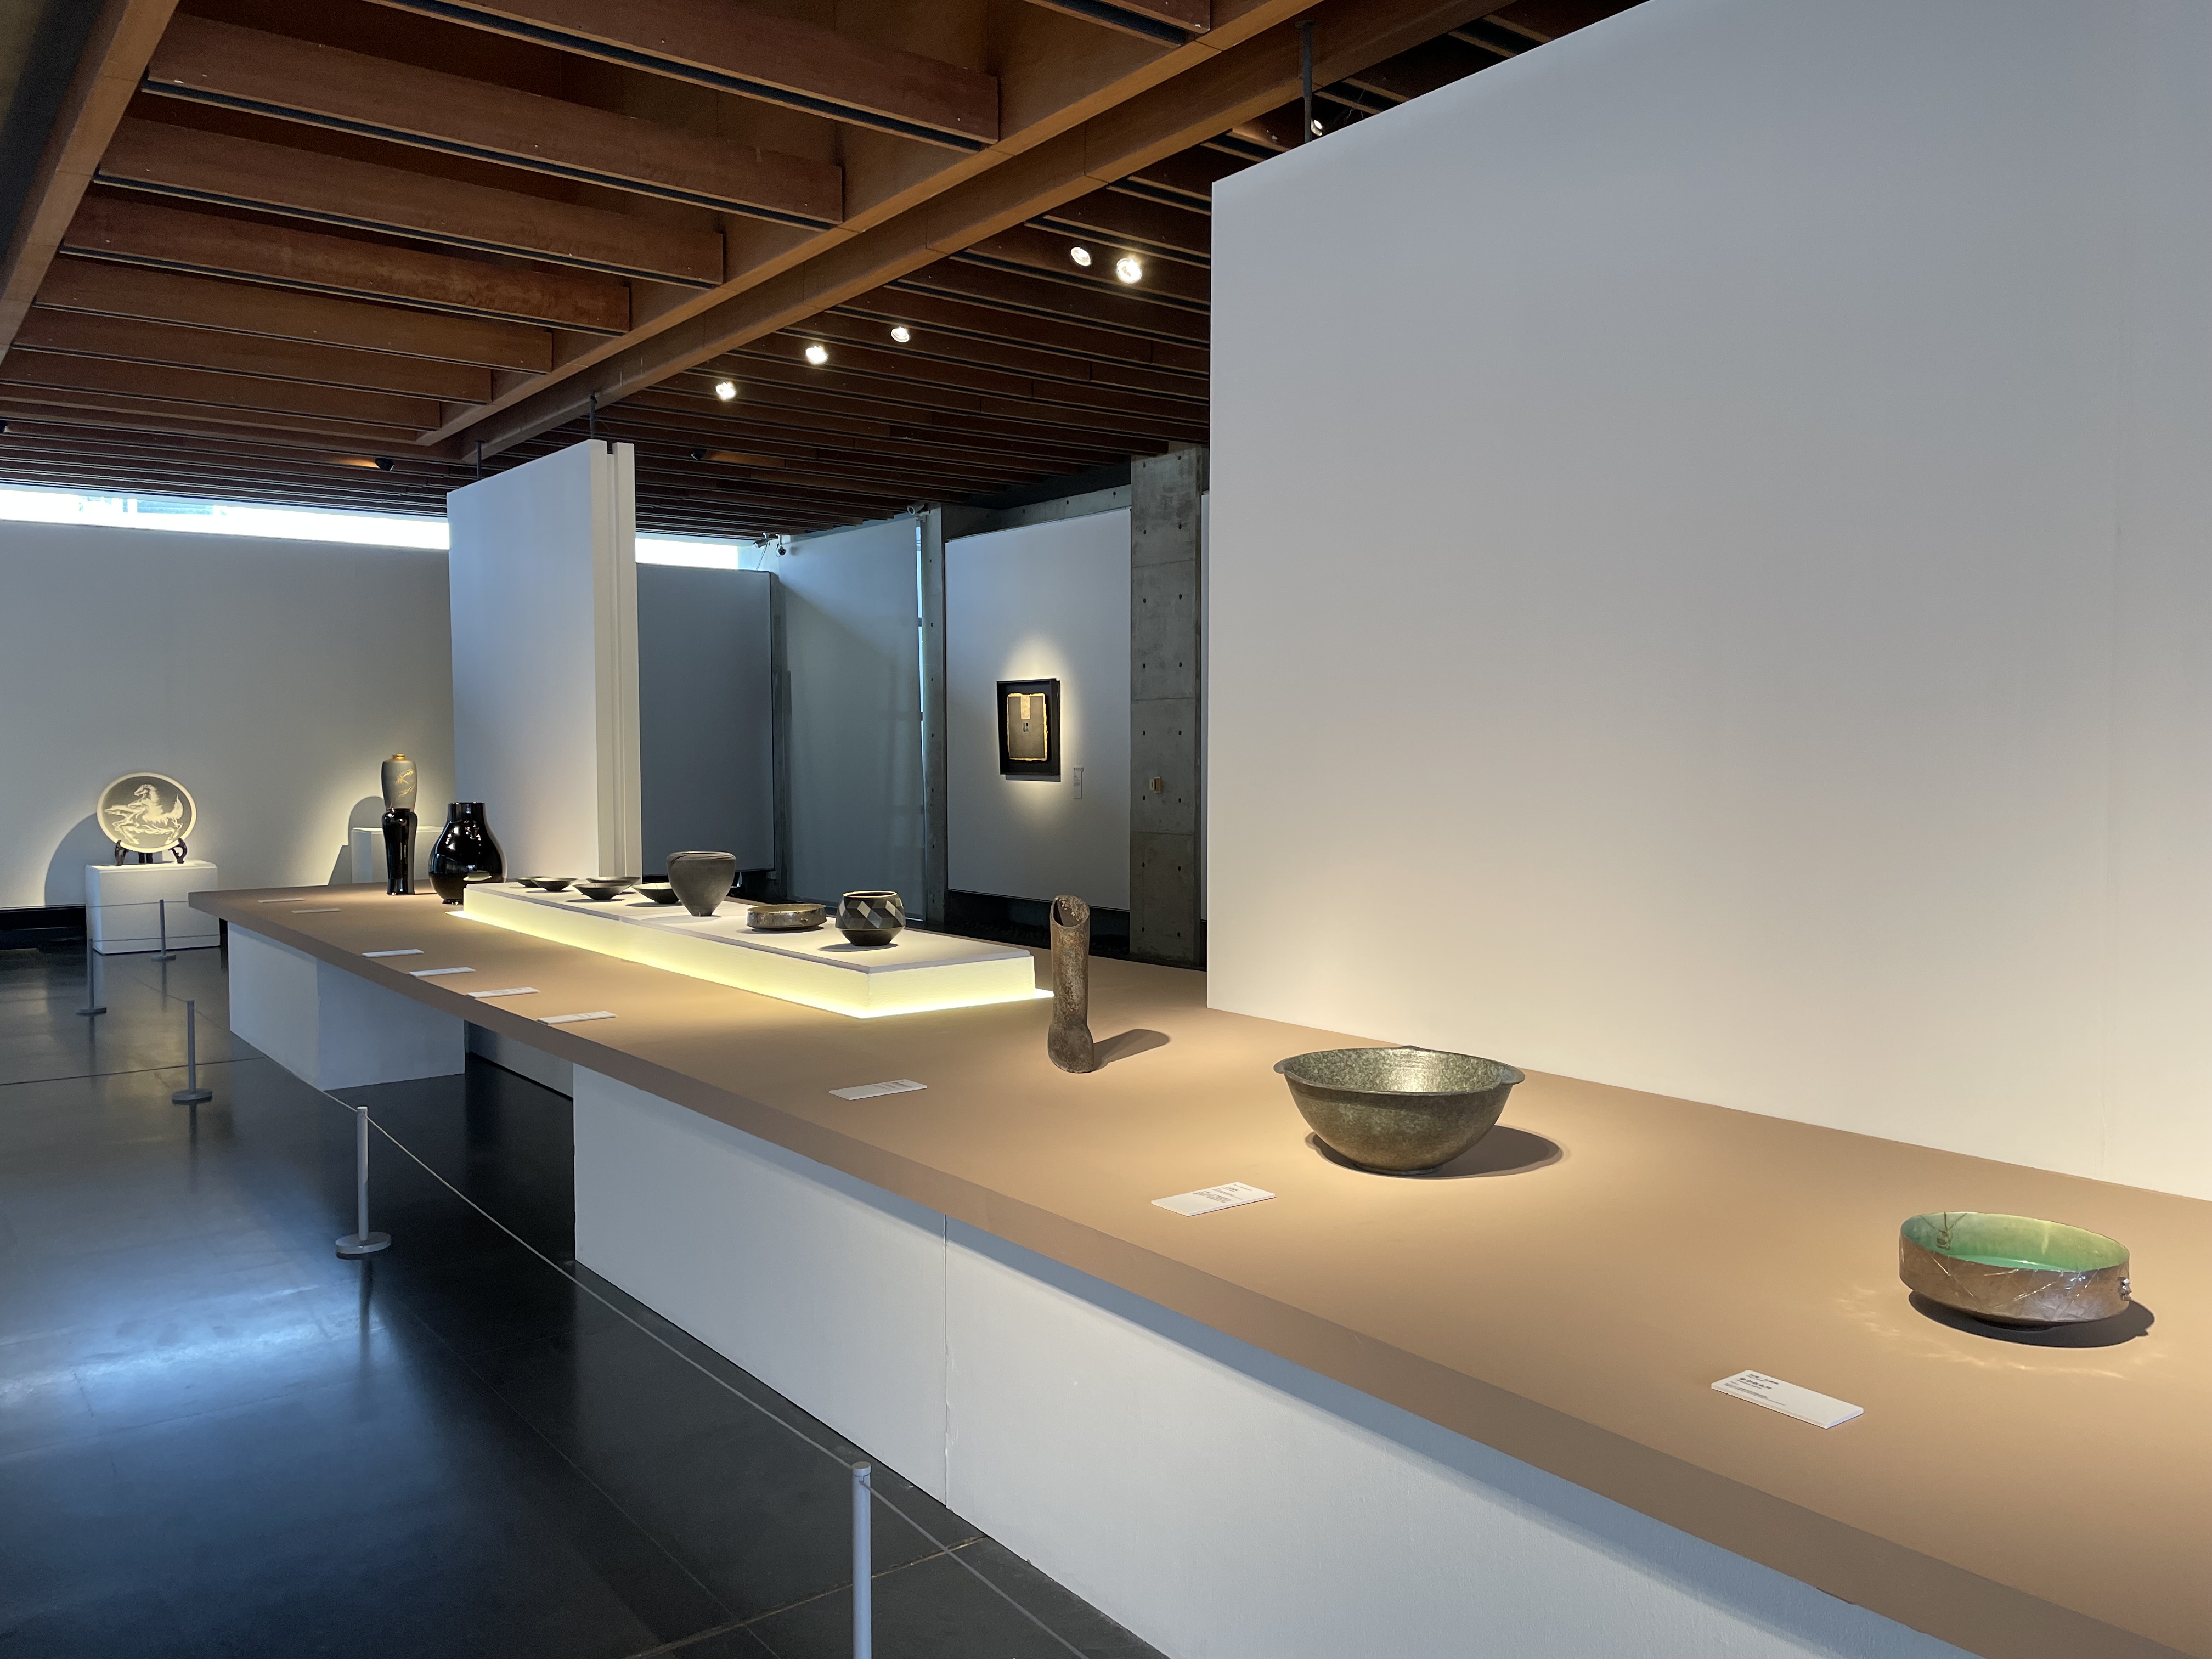 新北市立鶯歌陶瓷博物館即日起至9月3日止，於3樓特展室推出年度展覽「黑華白光—器用之美」。 